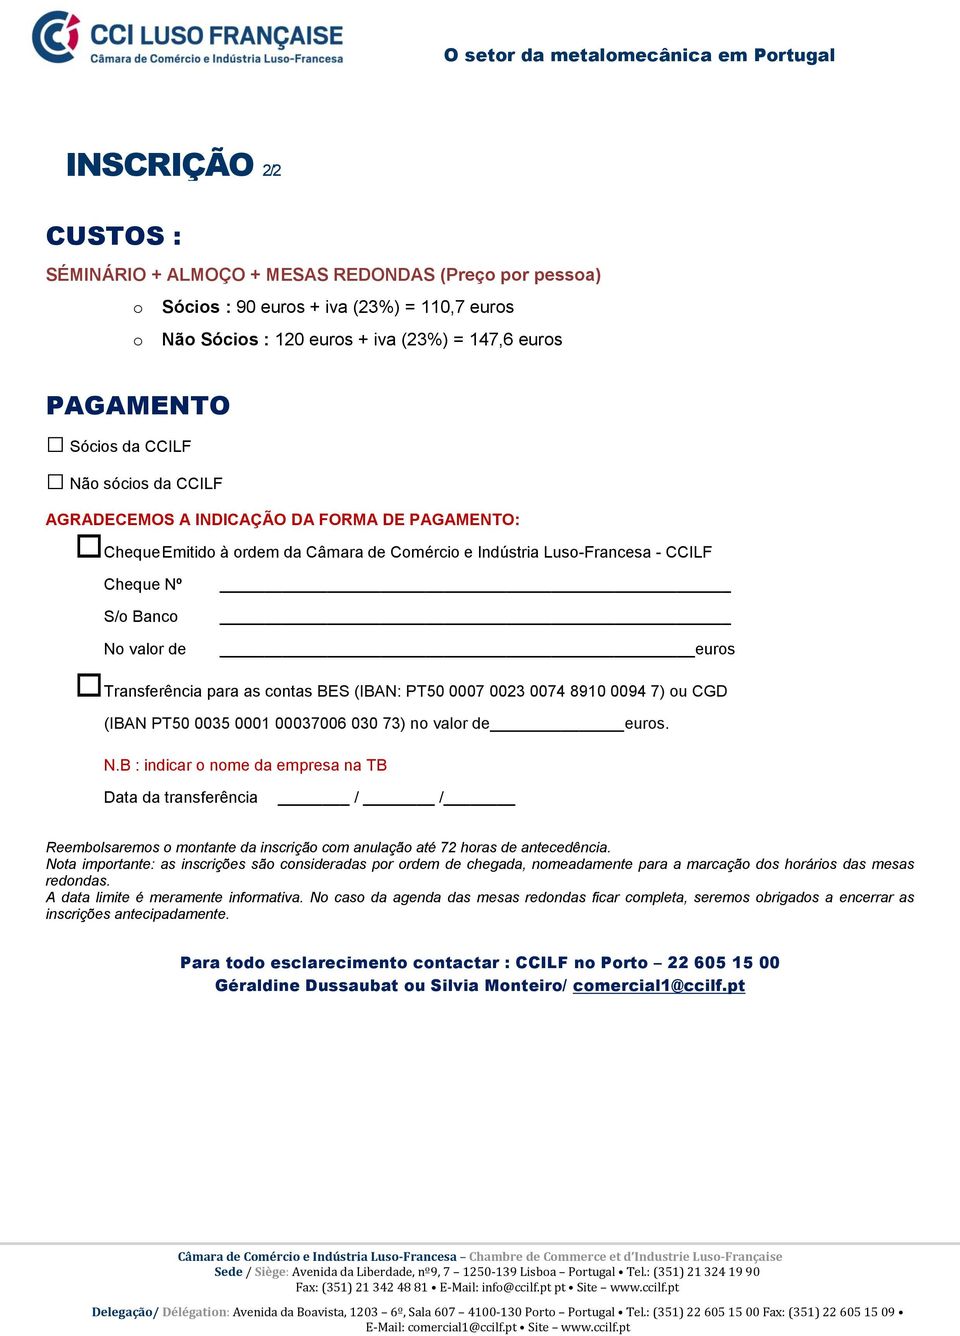 Transferência para as contas BES (IBAN: PT50 0007 0023 0074 8910 0094 7) ou CGD (IBAN PT50 0035 0001 00037006 030 73) no valor de euros. N.